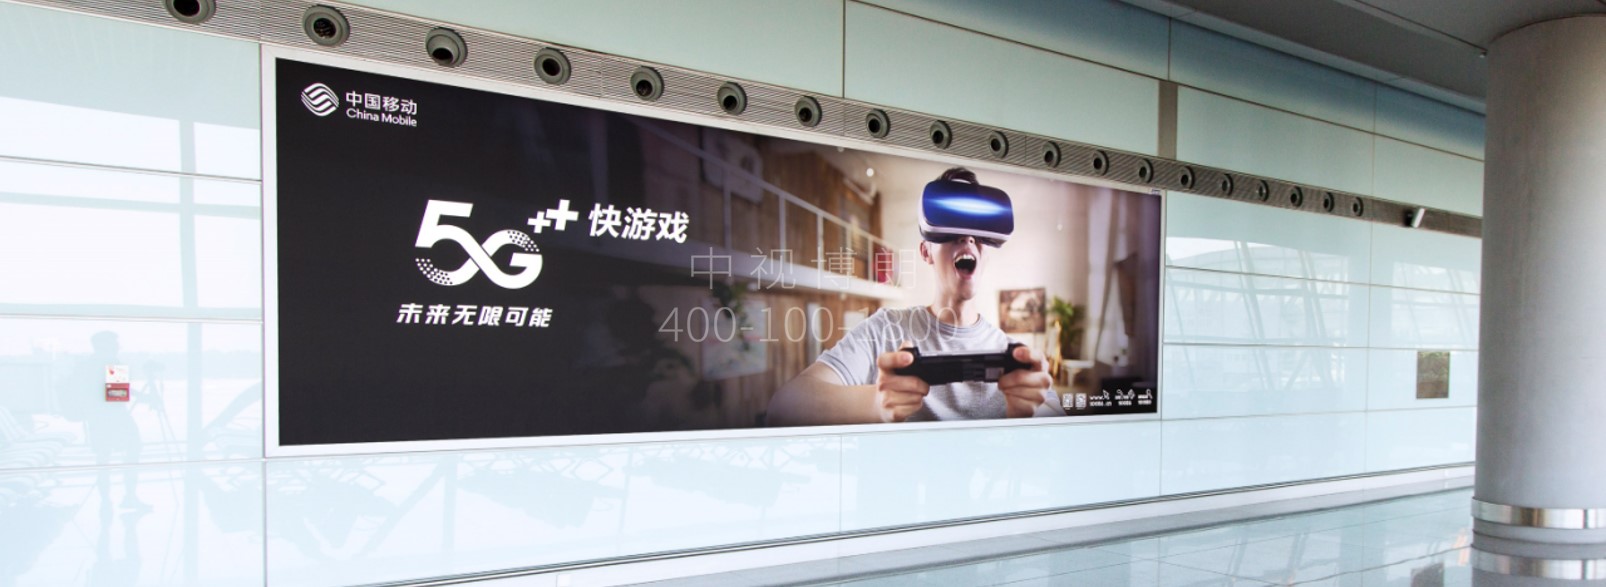 北京首都机场广告-T3国际出发走廊12块联排灯箱